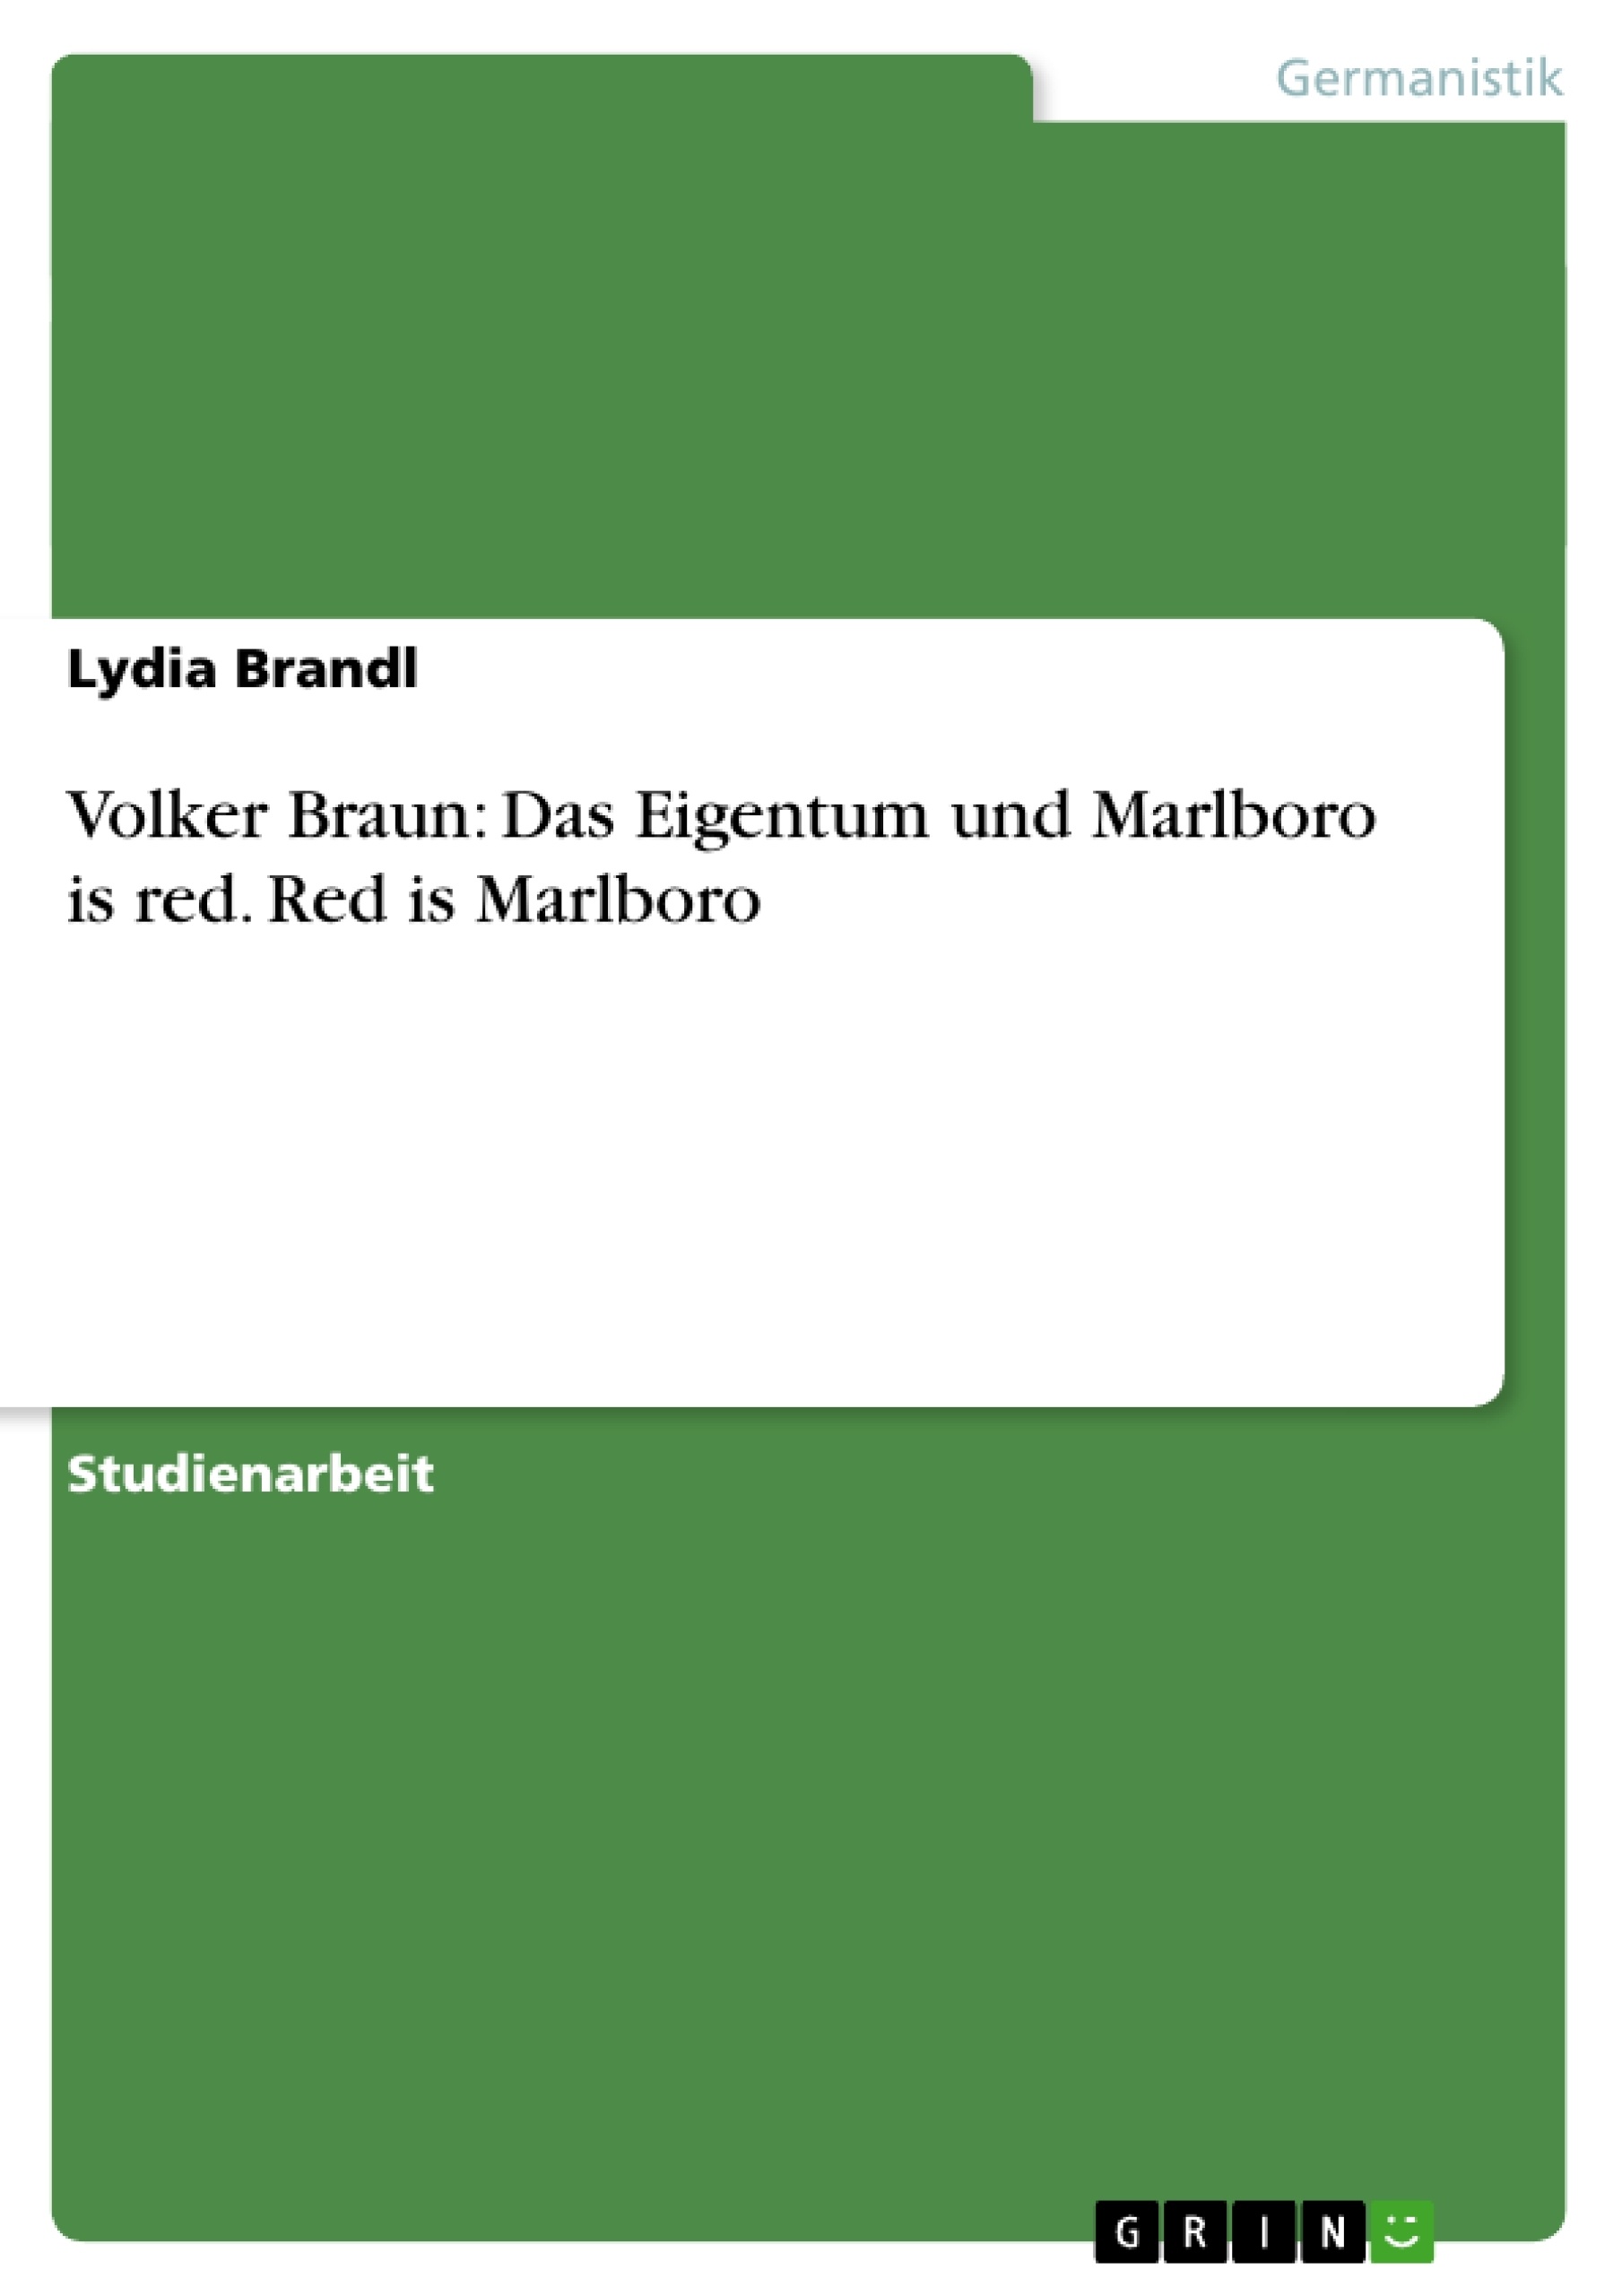 Título: Volker Braun: Das Eigentum und Marlboro is red. Red is Marlboro